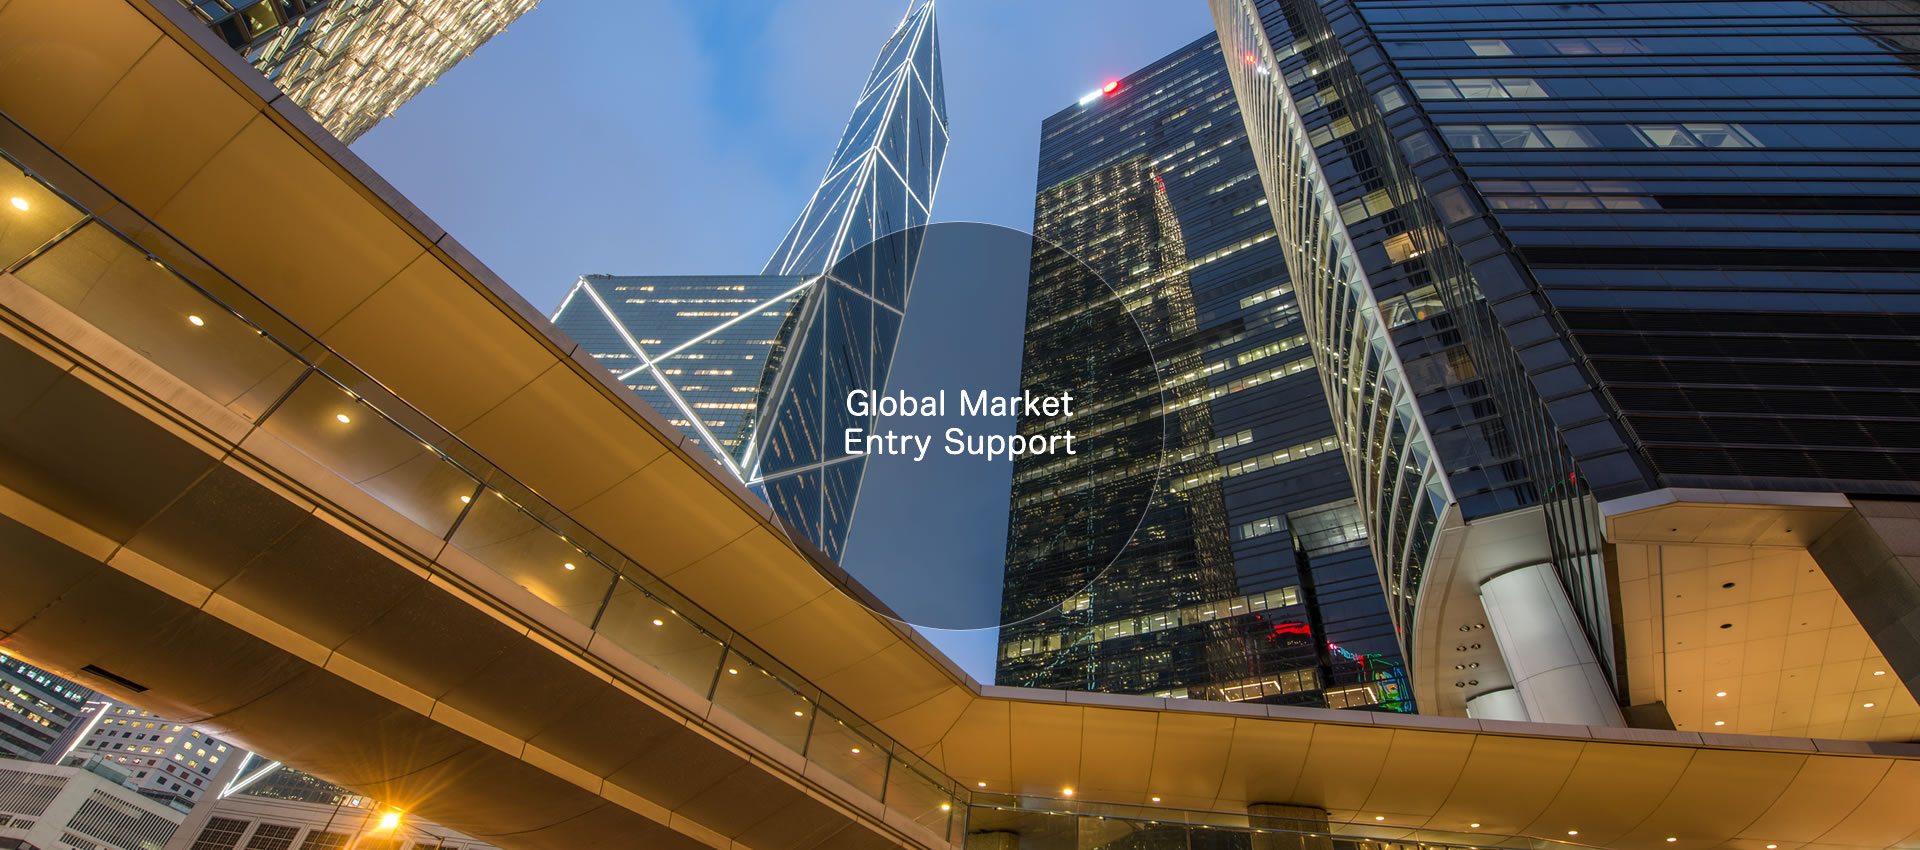 Global Market Entry Support　インバウンド、アウトバウンドの両輪で海外市場への進出をサポートいたします